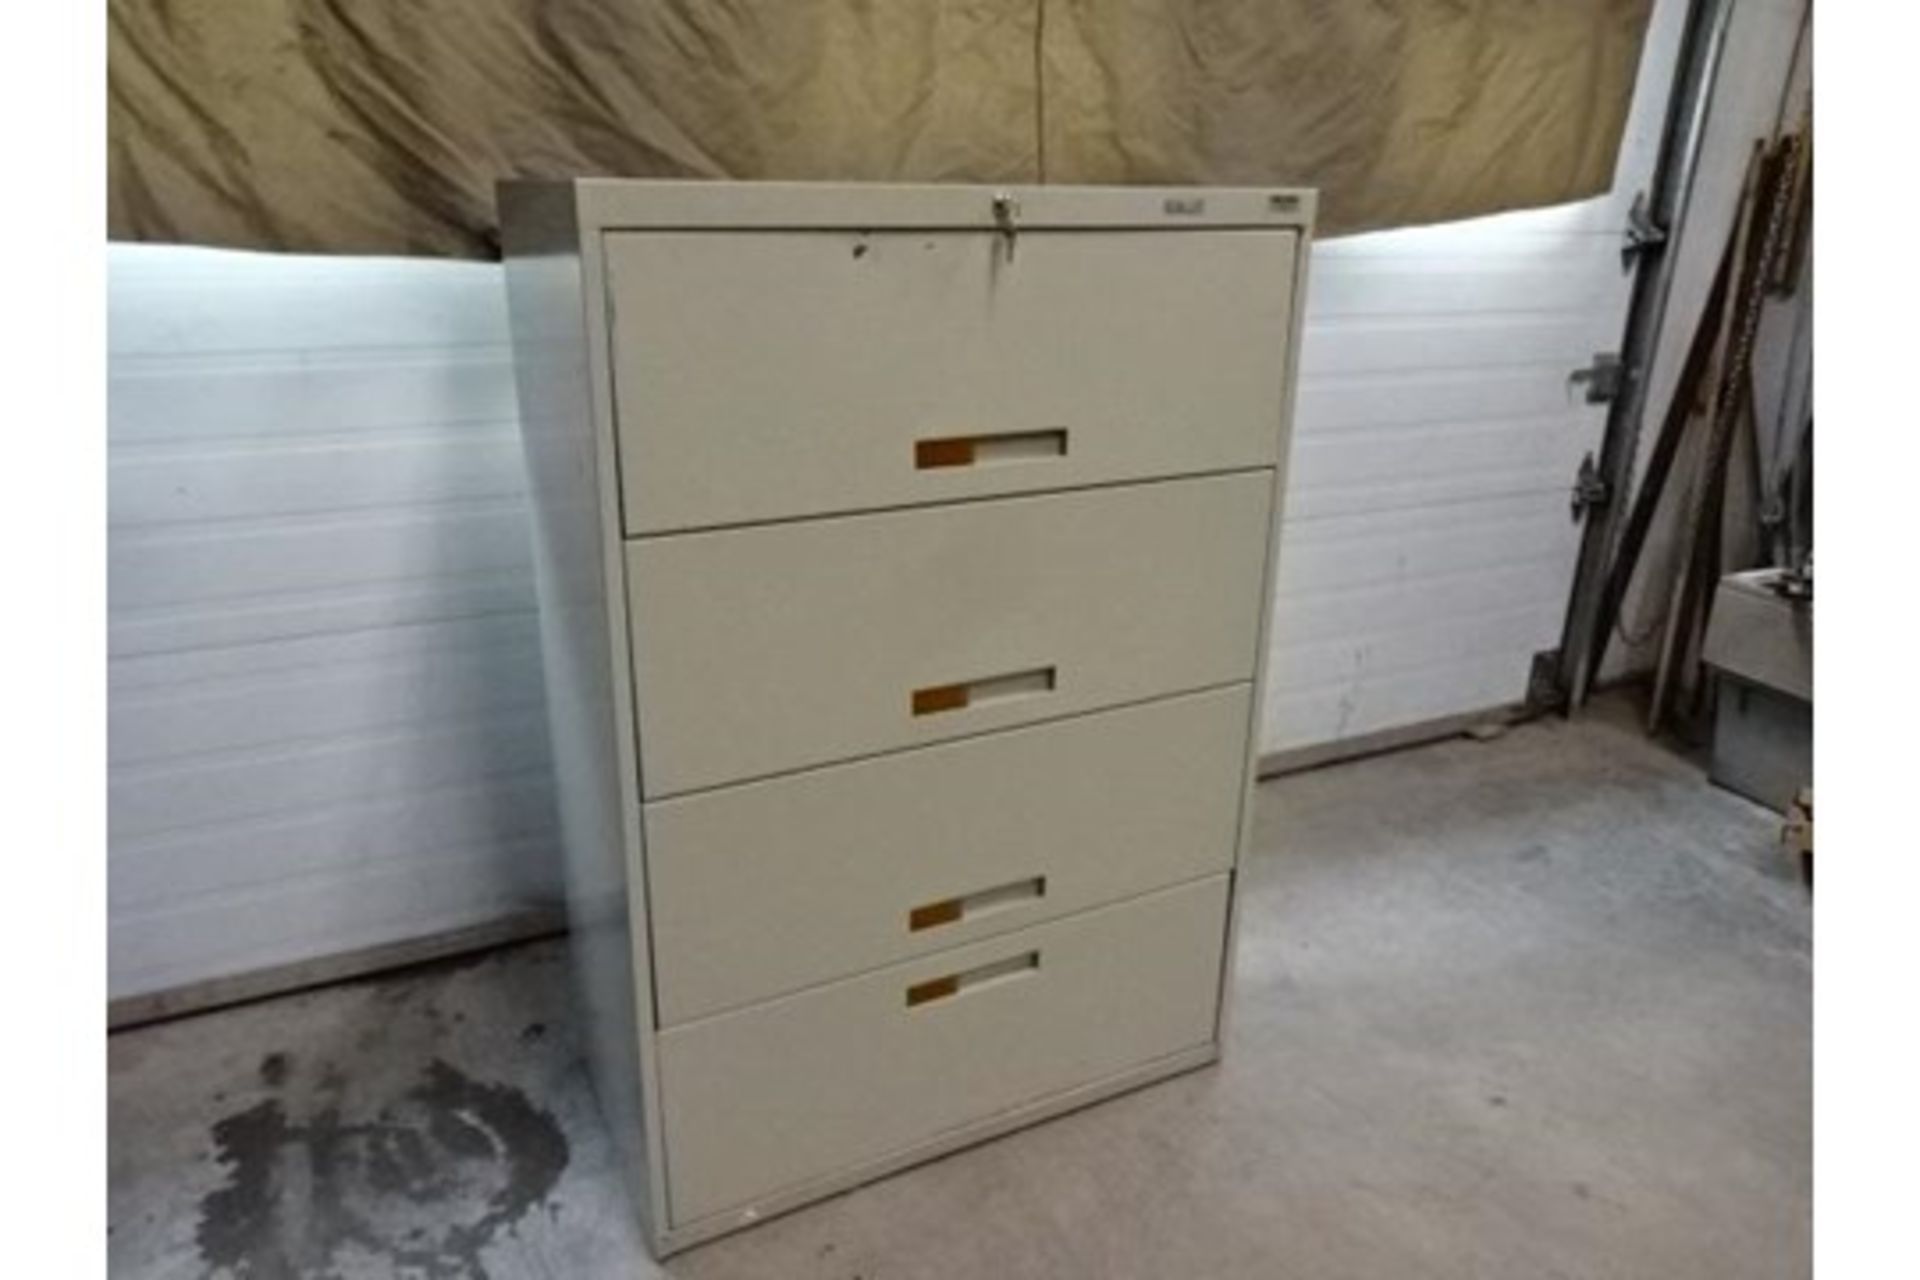 drawer cabinet 3ft x 18in x 52in high - CLASSEUR COMMANDER 3pi x 18po x 52po de hauteur